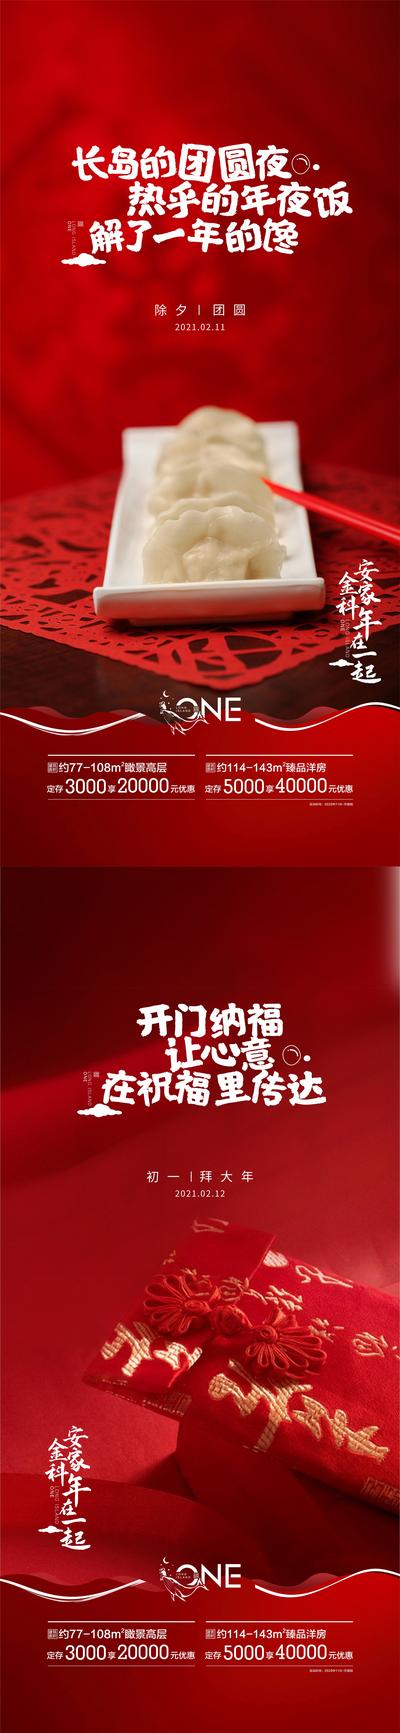 南门网 海报 房地产 中国传统节日 除夕 初一 年俗 饺子 红包 剪纸